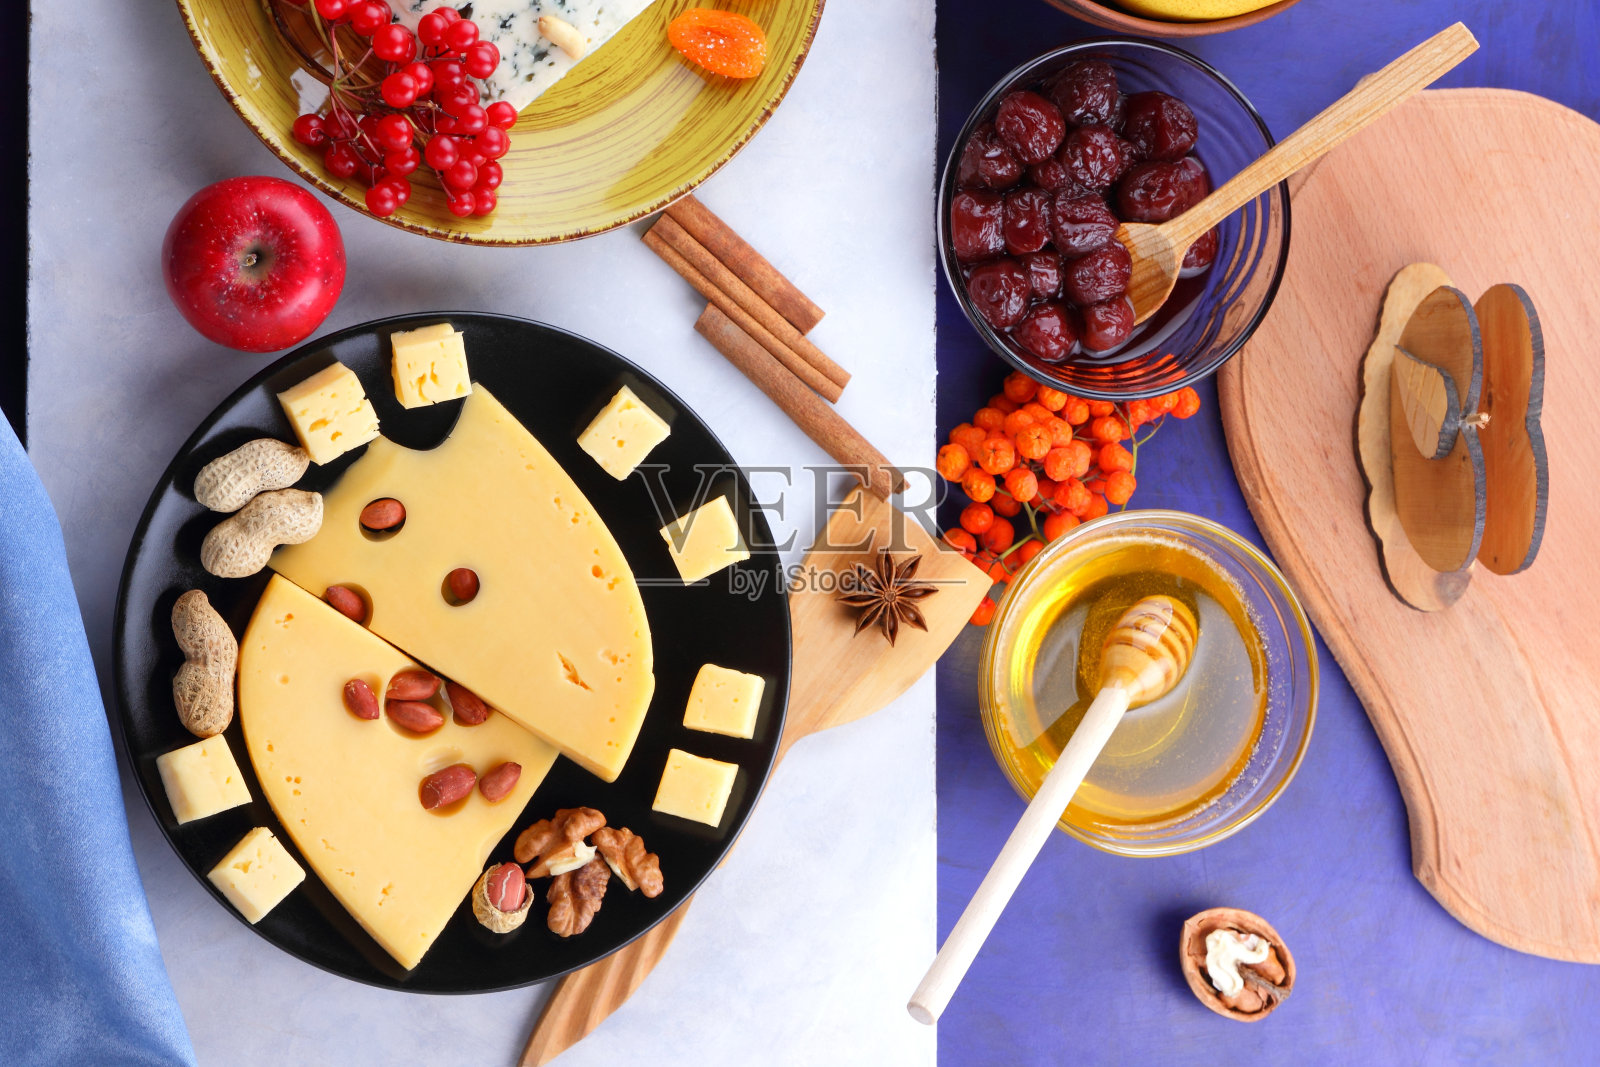 发霉的奶酪、水果、深蓝色背景上有孔的硬奶酪、黑色盘子上的奶酪、水果、坚果、蜂蜜、果酱、圣诞晚餐、五彩缤纷的背景、复古风格照片摄影图片